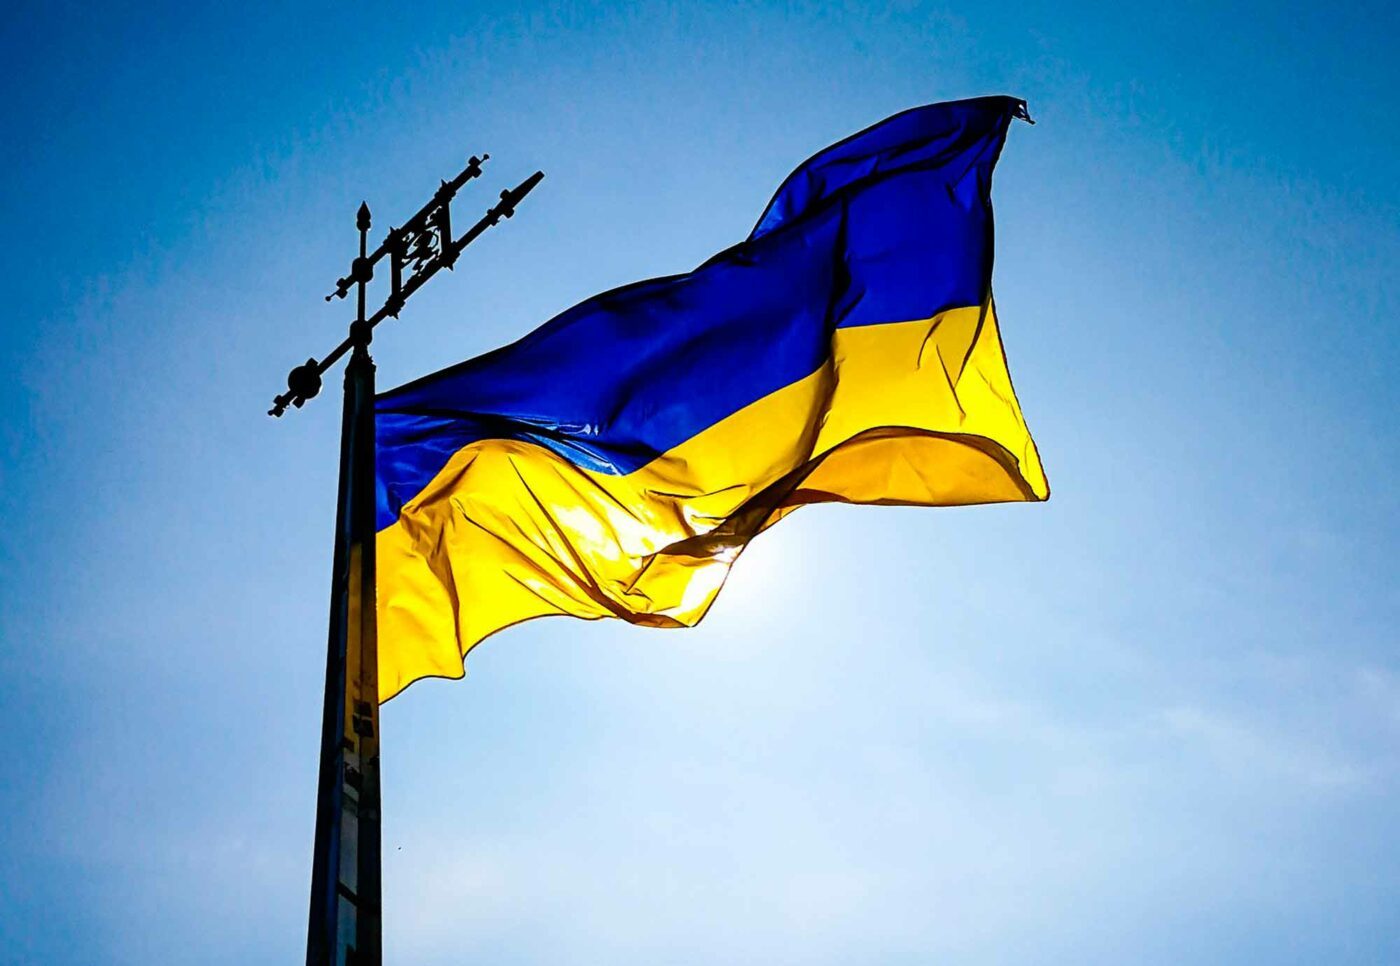 "Unser Mitgefühl gilt den Menschen in der Ukraine, die in ihrer Geschichte schon so viele dunkle Stunden erlebt haben und nun wieder so schwer geprüft werden", schreibt der ÖRKÖ-Vorstand. Foto: pixabay